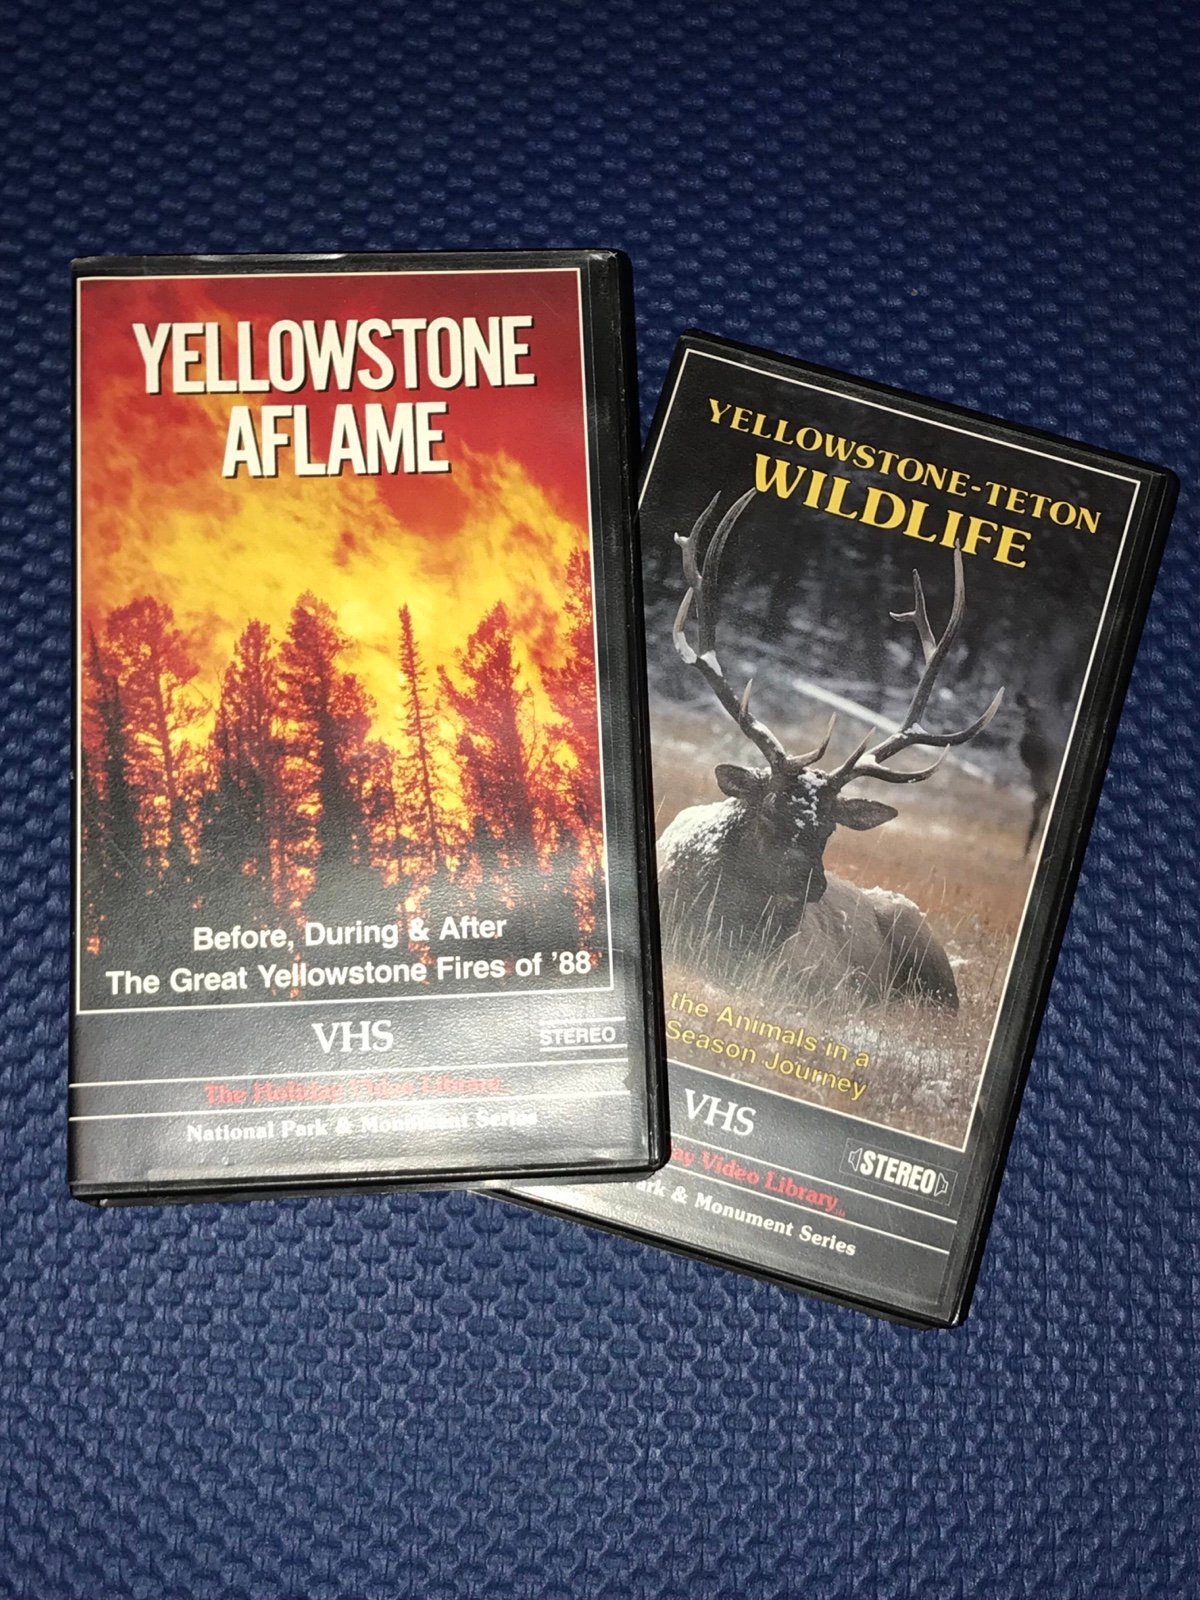 Yellowstone-Teton Wildlife/Yellowston Aflame VHS Set czeFwXX7W